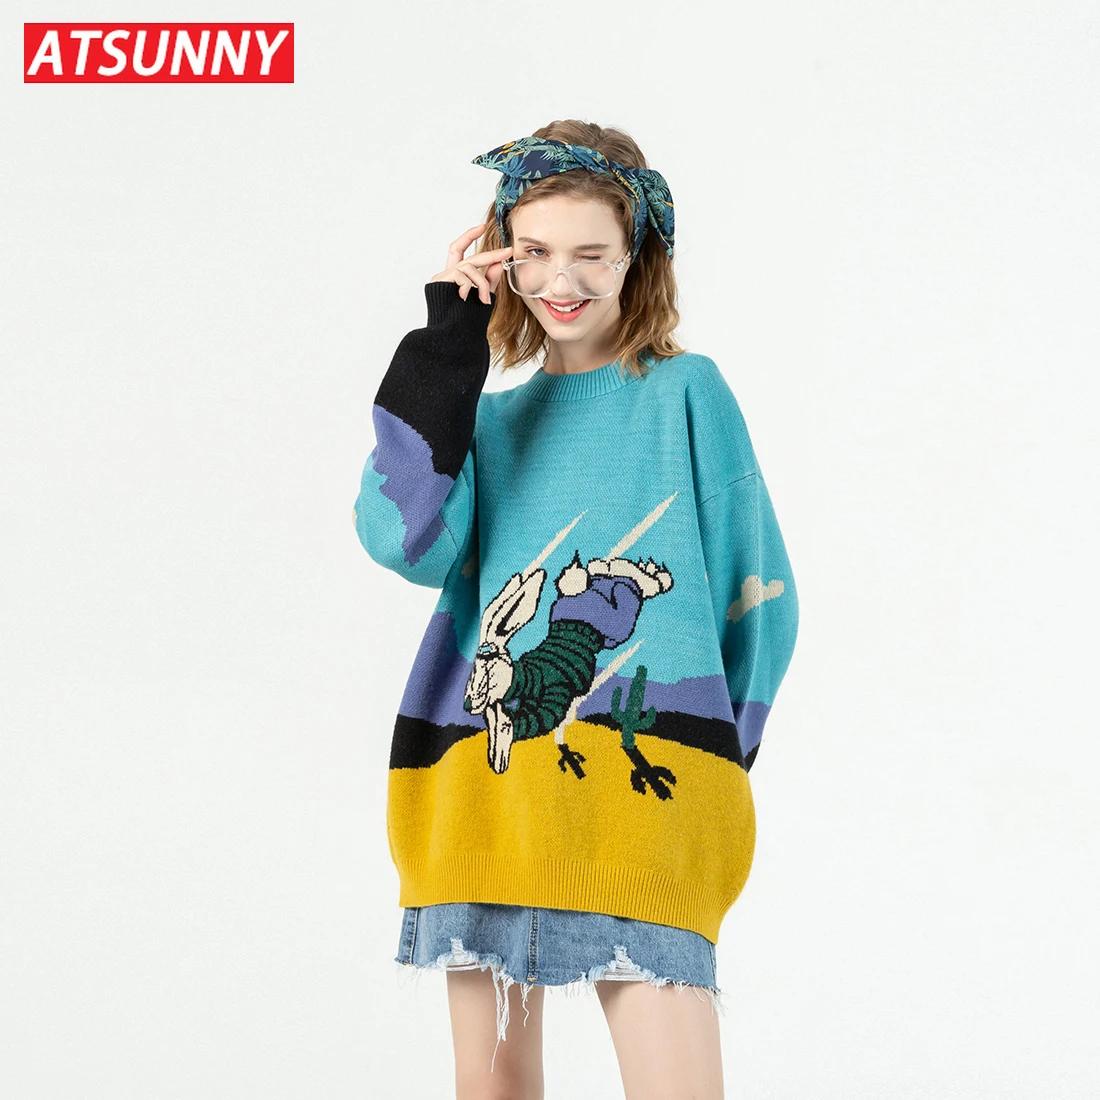 ATSUNNY Japanski Džemper Sa Zečica U Stilu hip-hop, Pulover, Vanjska Odjeća S Likovima iz Crtića, Casual Džemper Za Parove, Jesen 2021